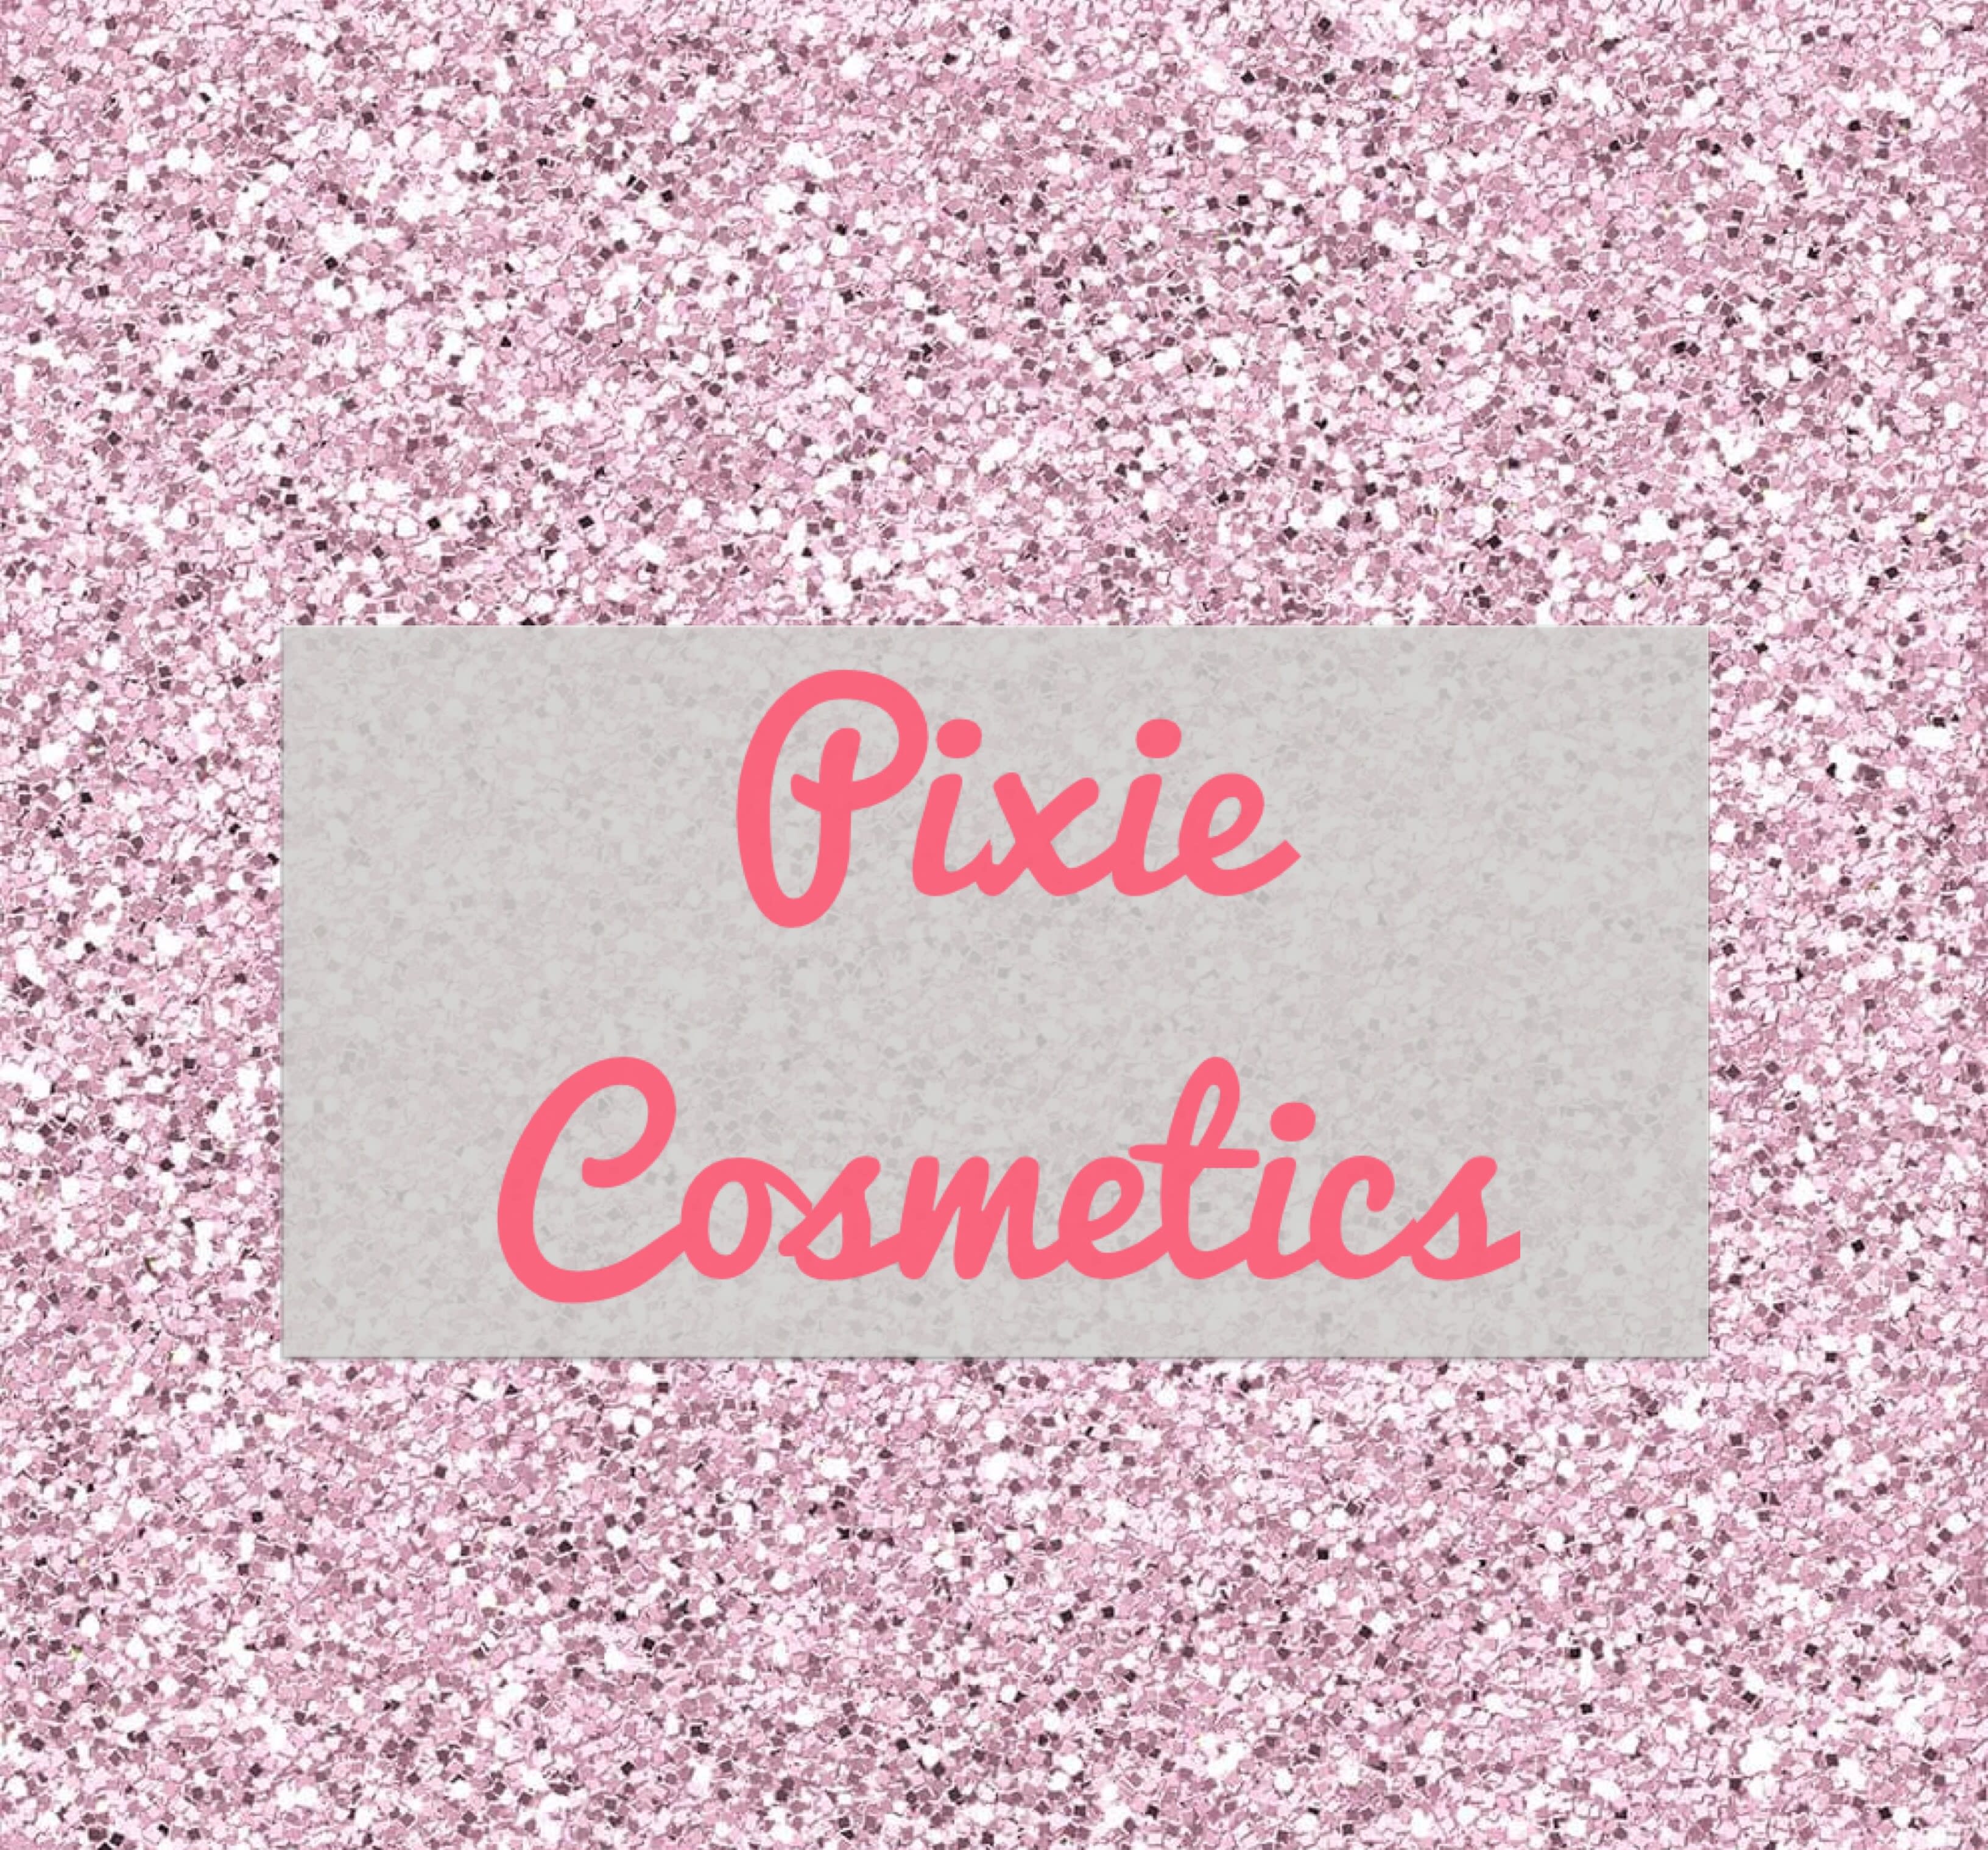 Pixie Cosmetics